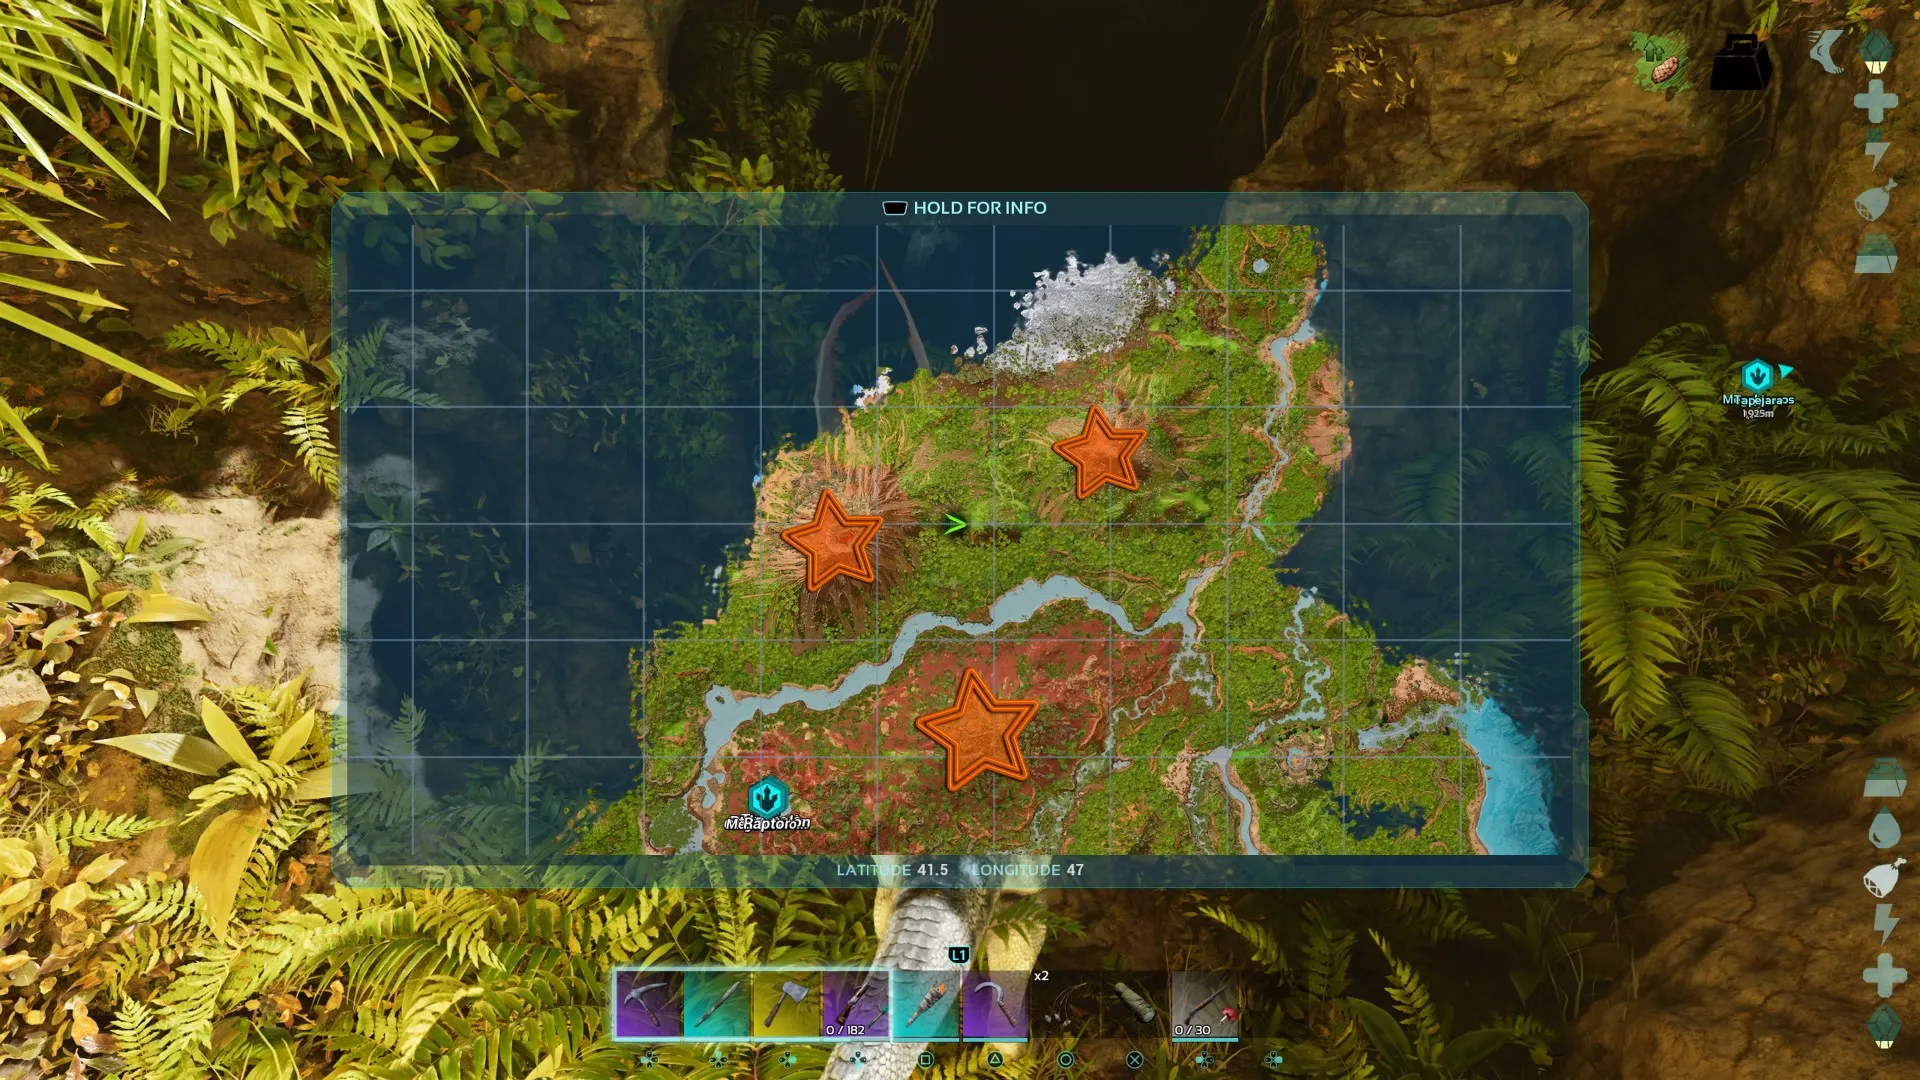 玩家角色查看显示有三个橙色星星标记的地图，上面有多迪克鲁斯在《方舟生存进化》中的出生点位置